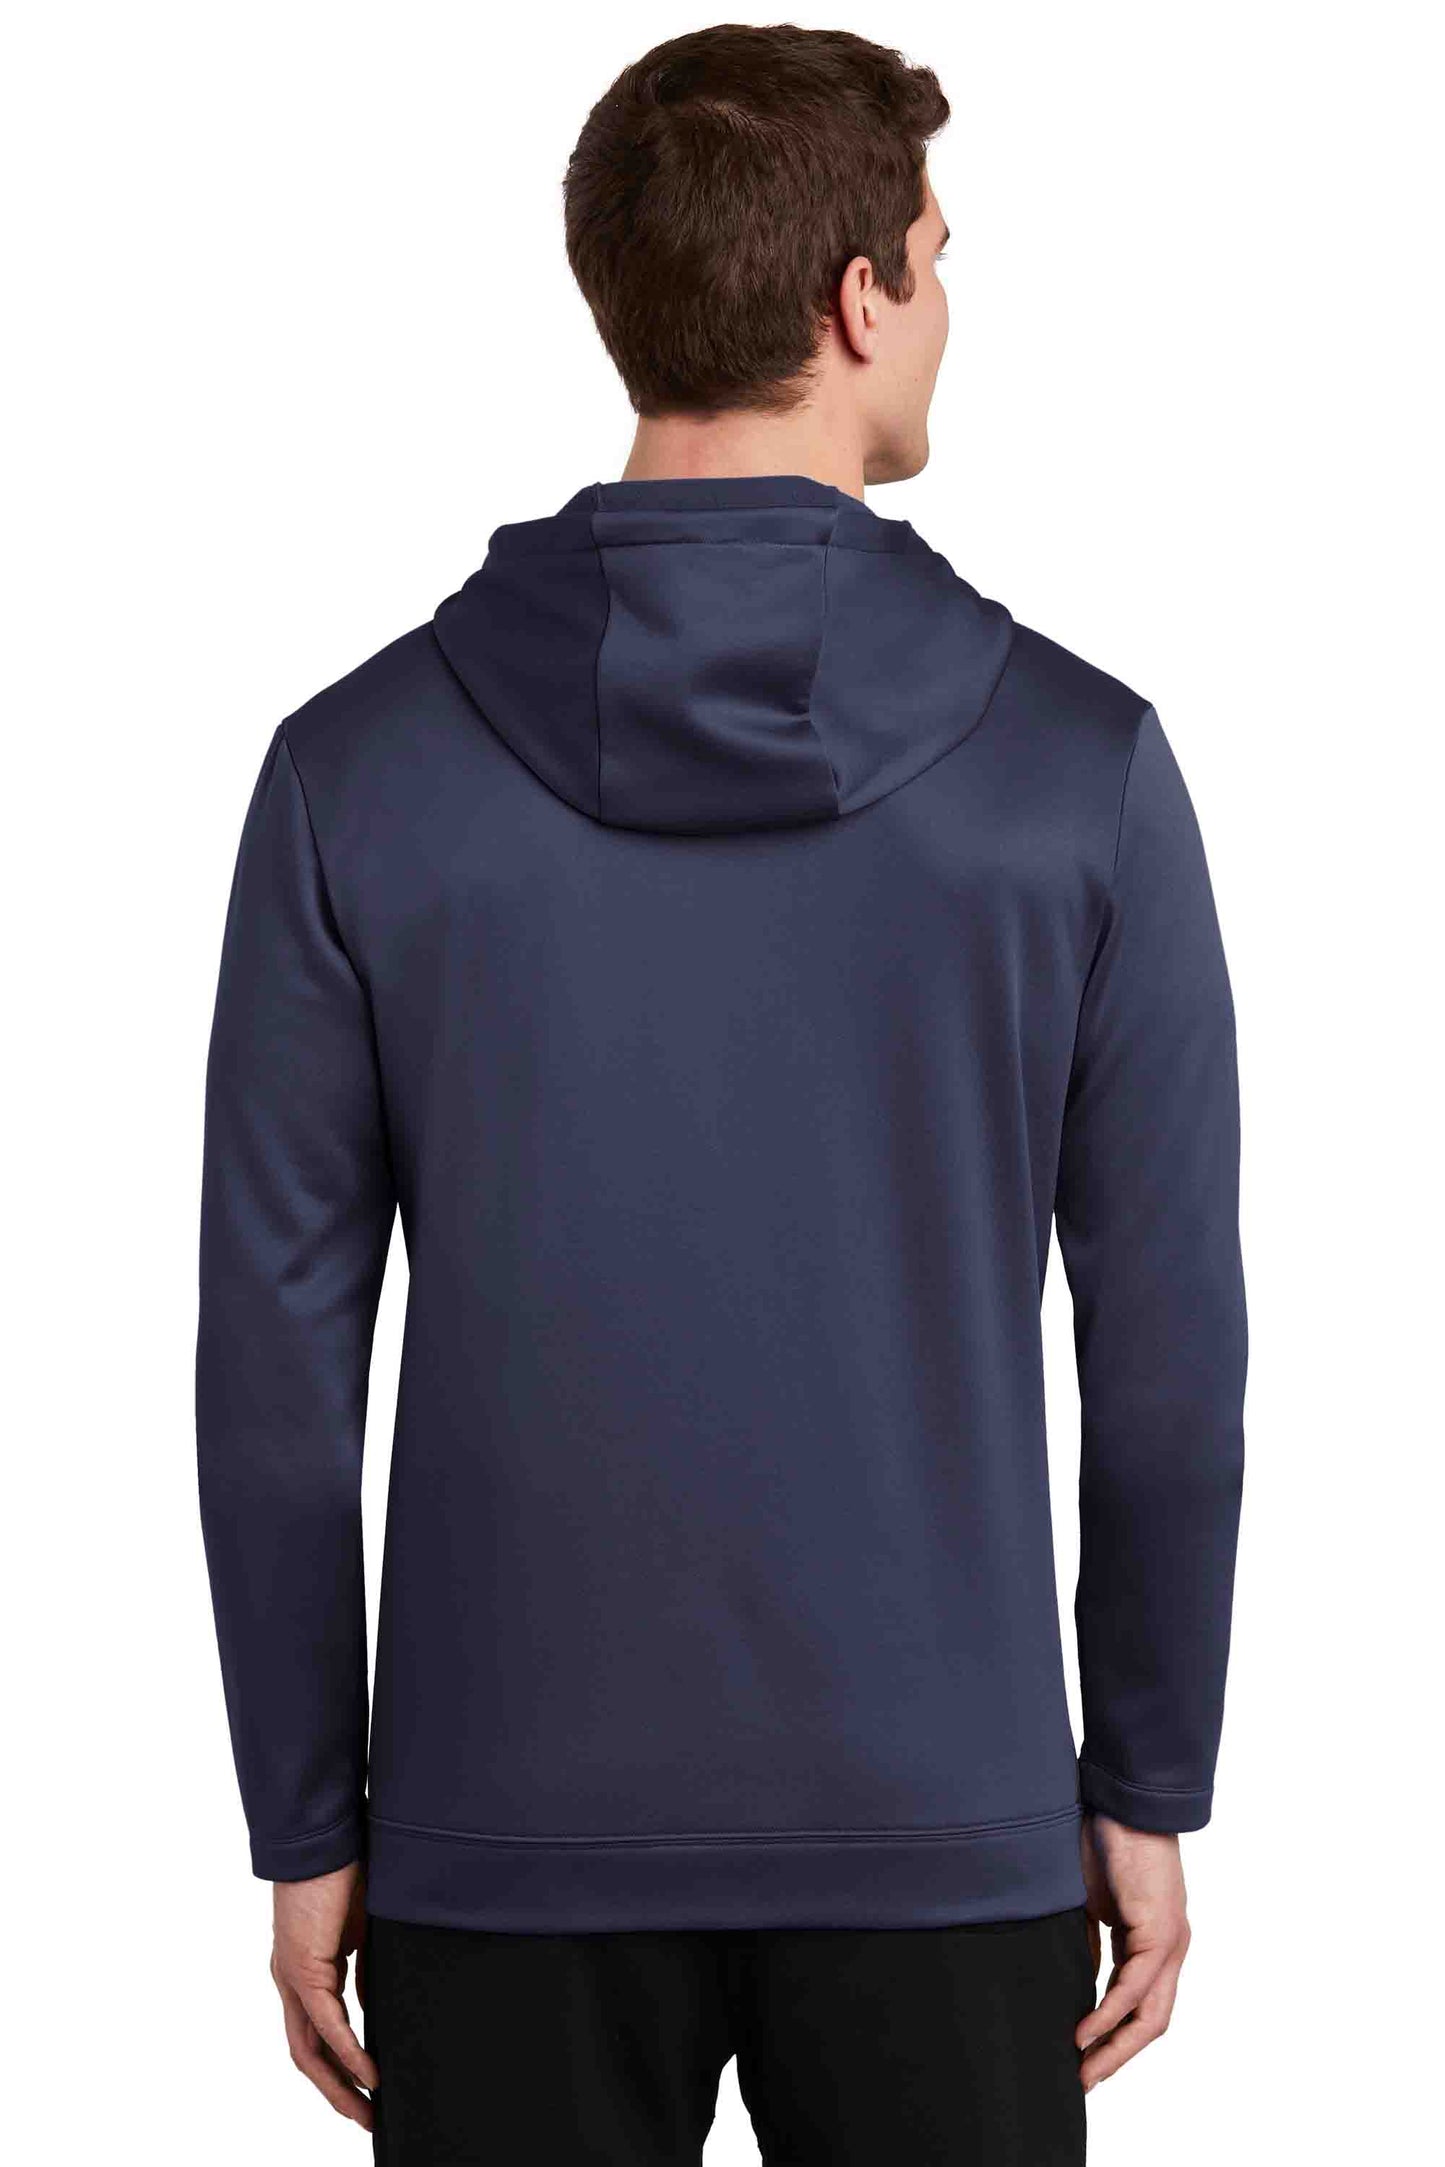 Nike Dri-FIT Hooded Zip Sweatshirt